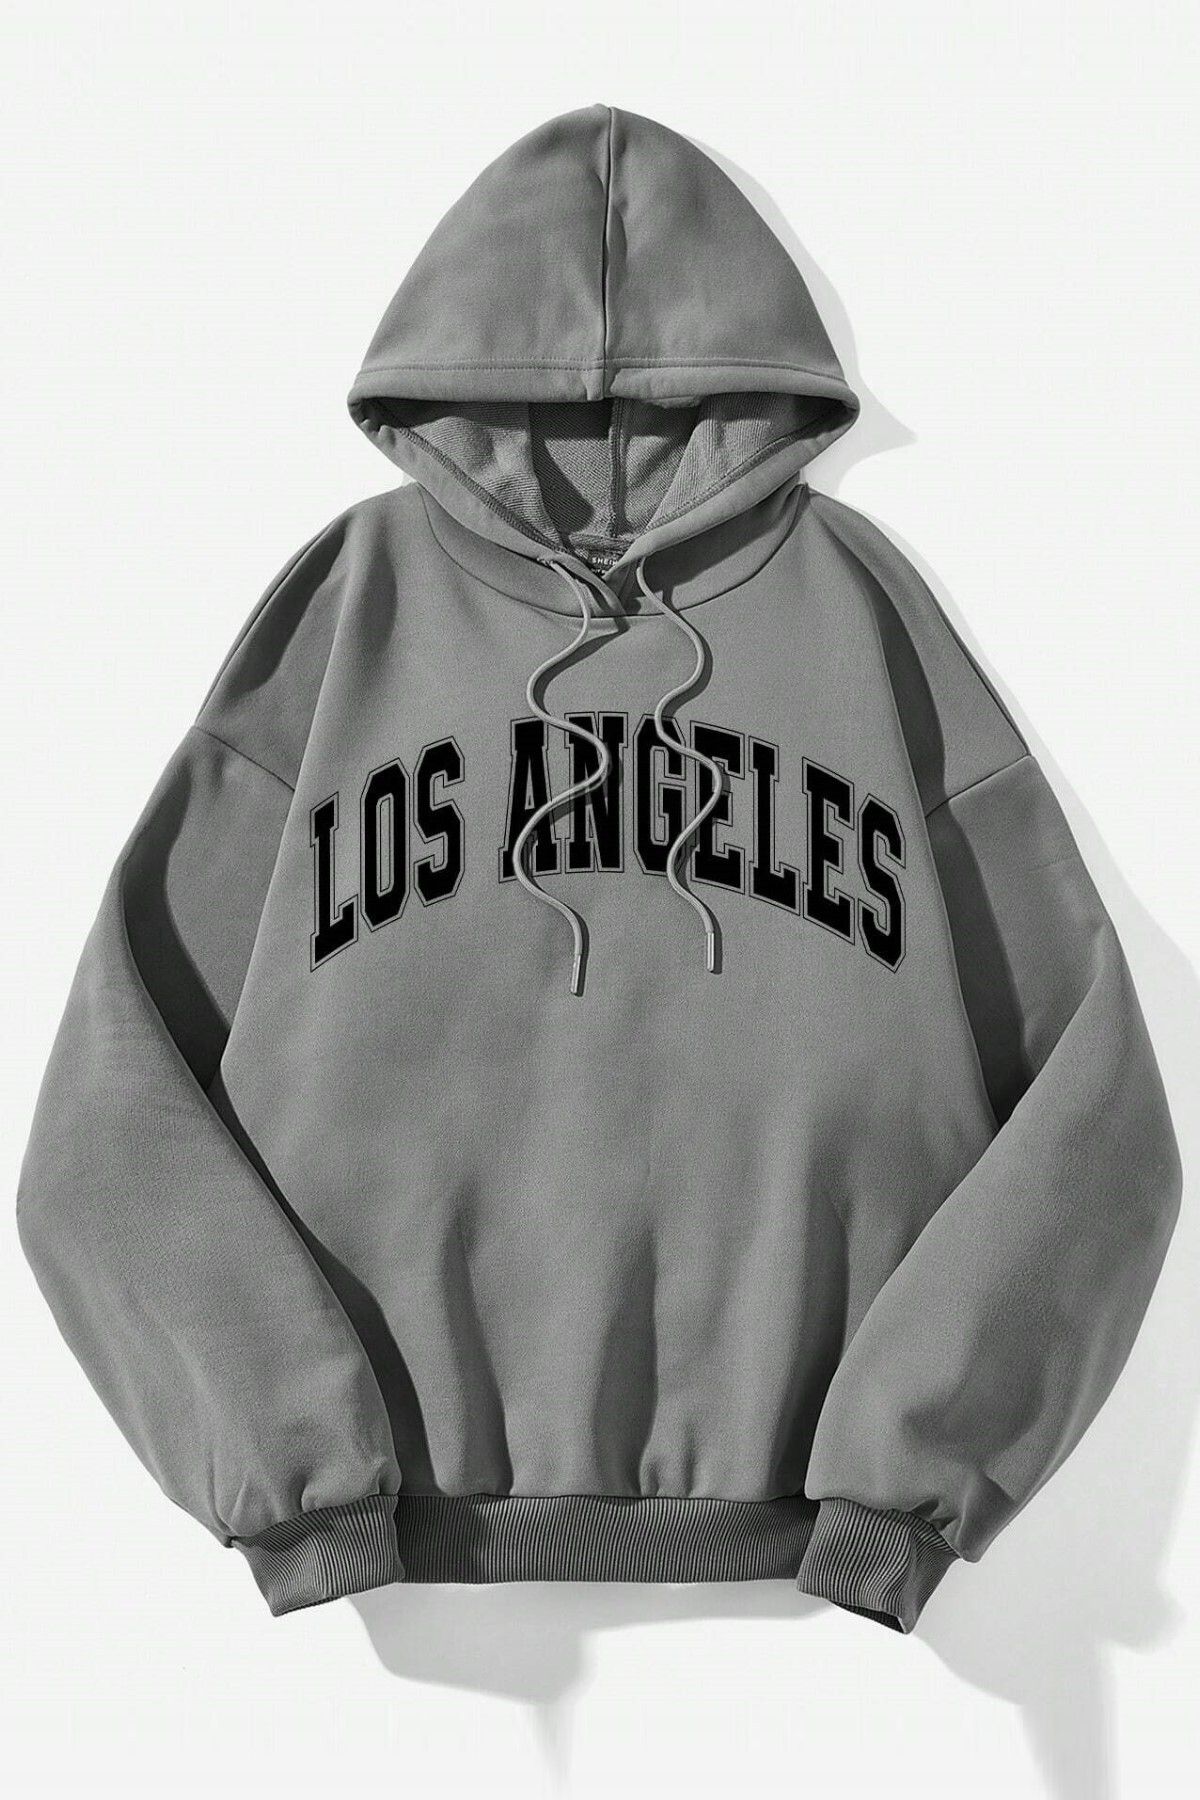 MODAGEN Unisex Füme Los Angeles Baskılı 3 İplik Oversize Sweatshirt